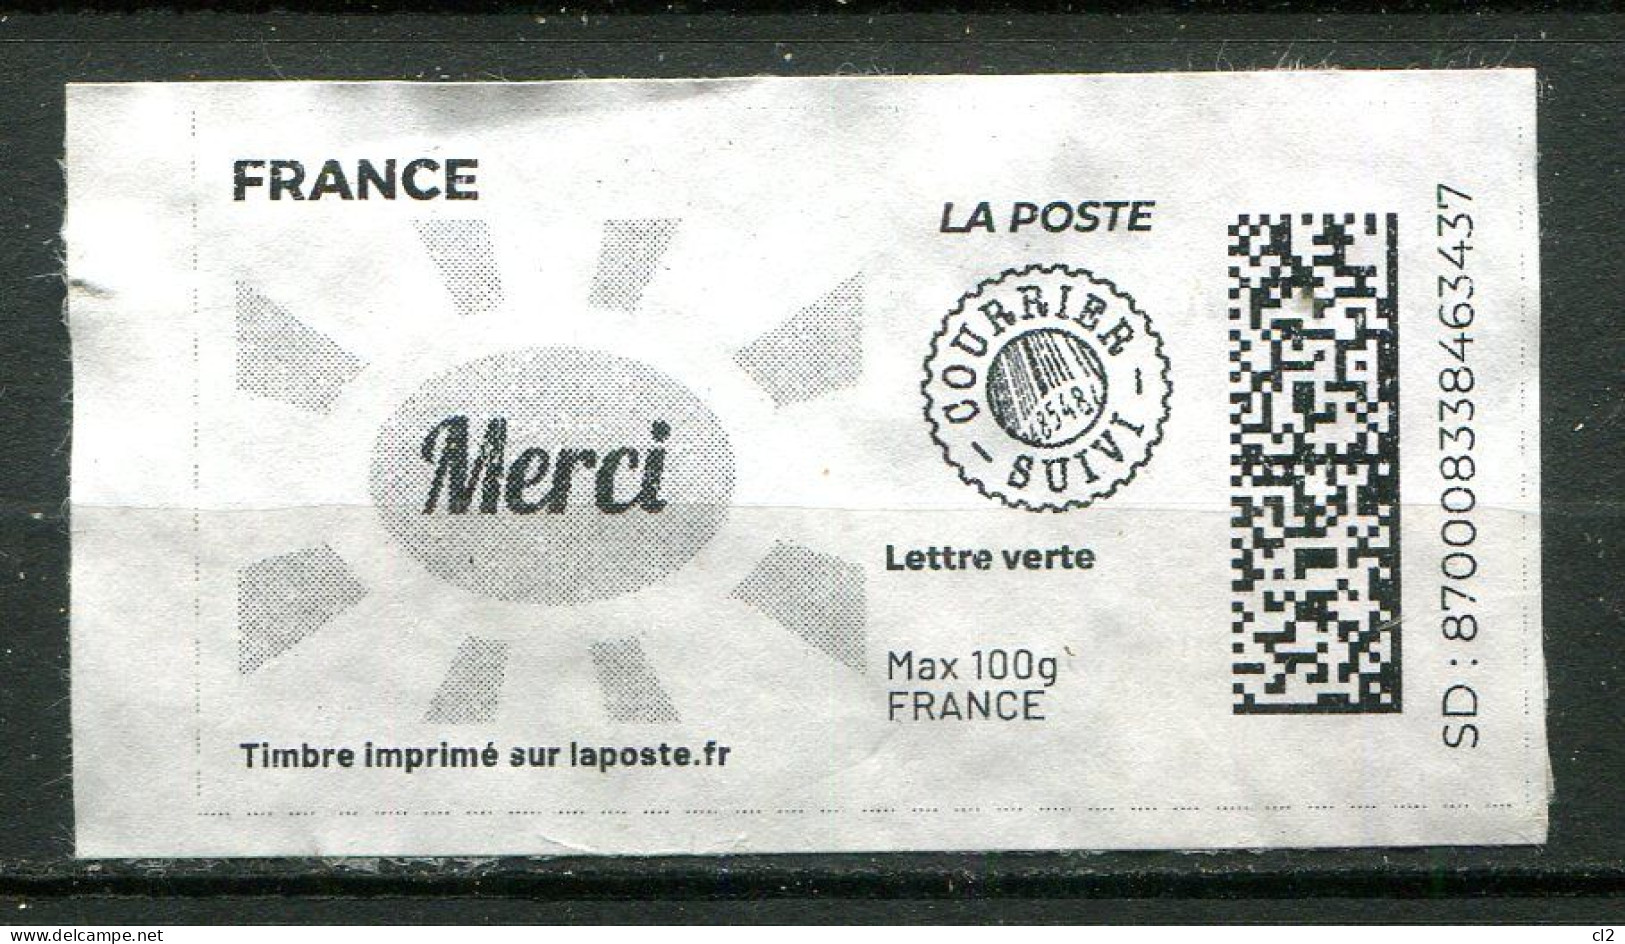 FRANCE - Timbre Imprimé Sur Laposte.fr - Lettre Verte - Courrier Suivi - Max 100g - MERCI - Printable Stamps (Montimbrenligne)